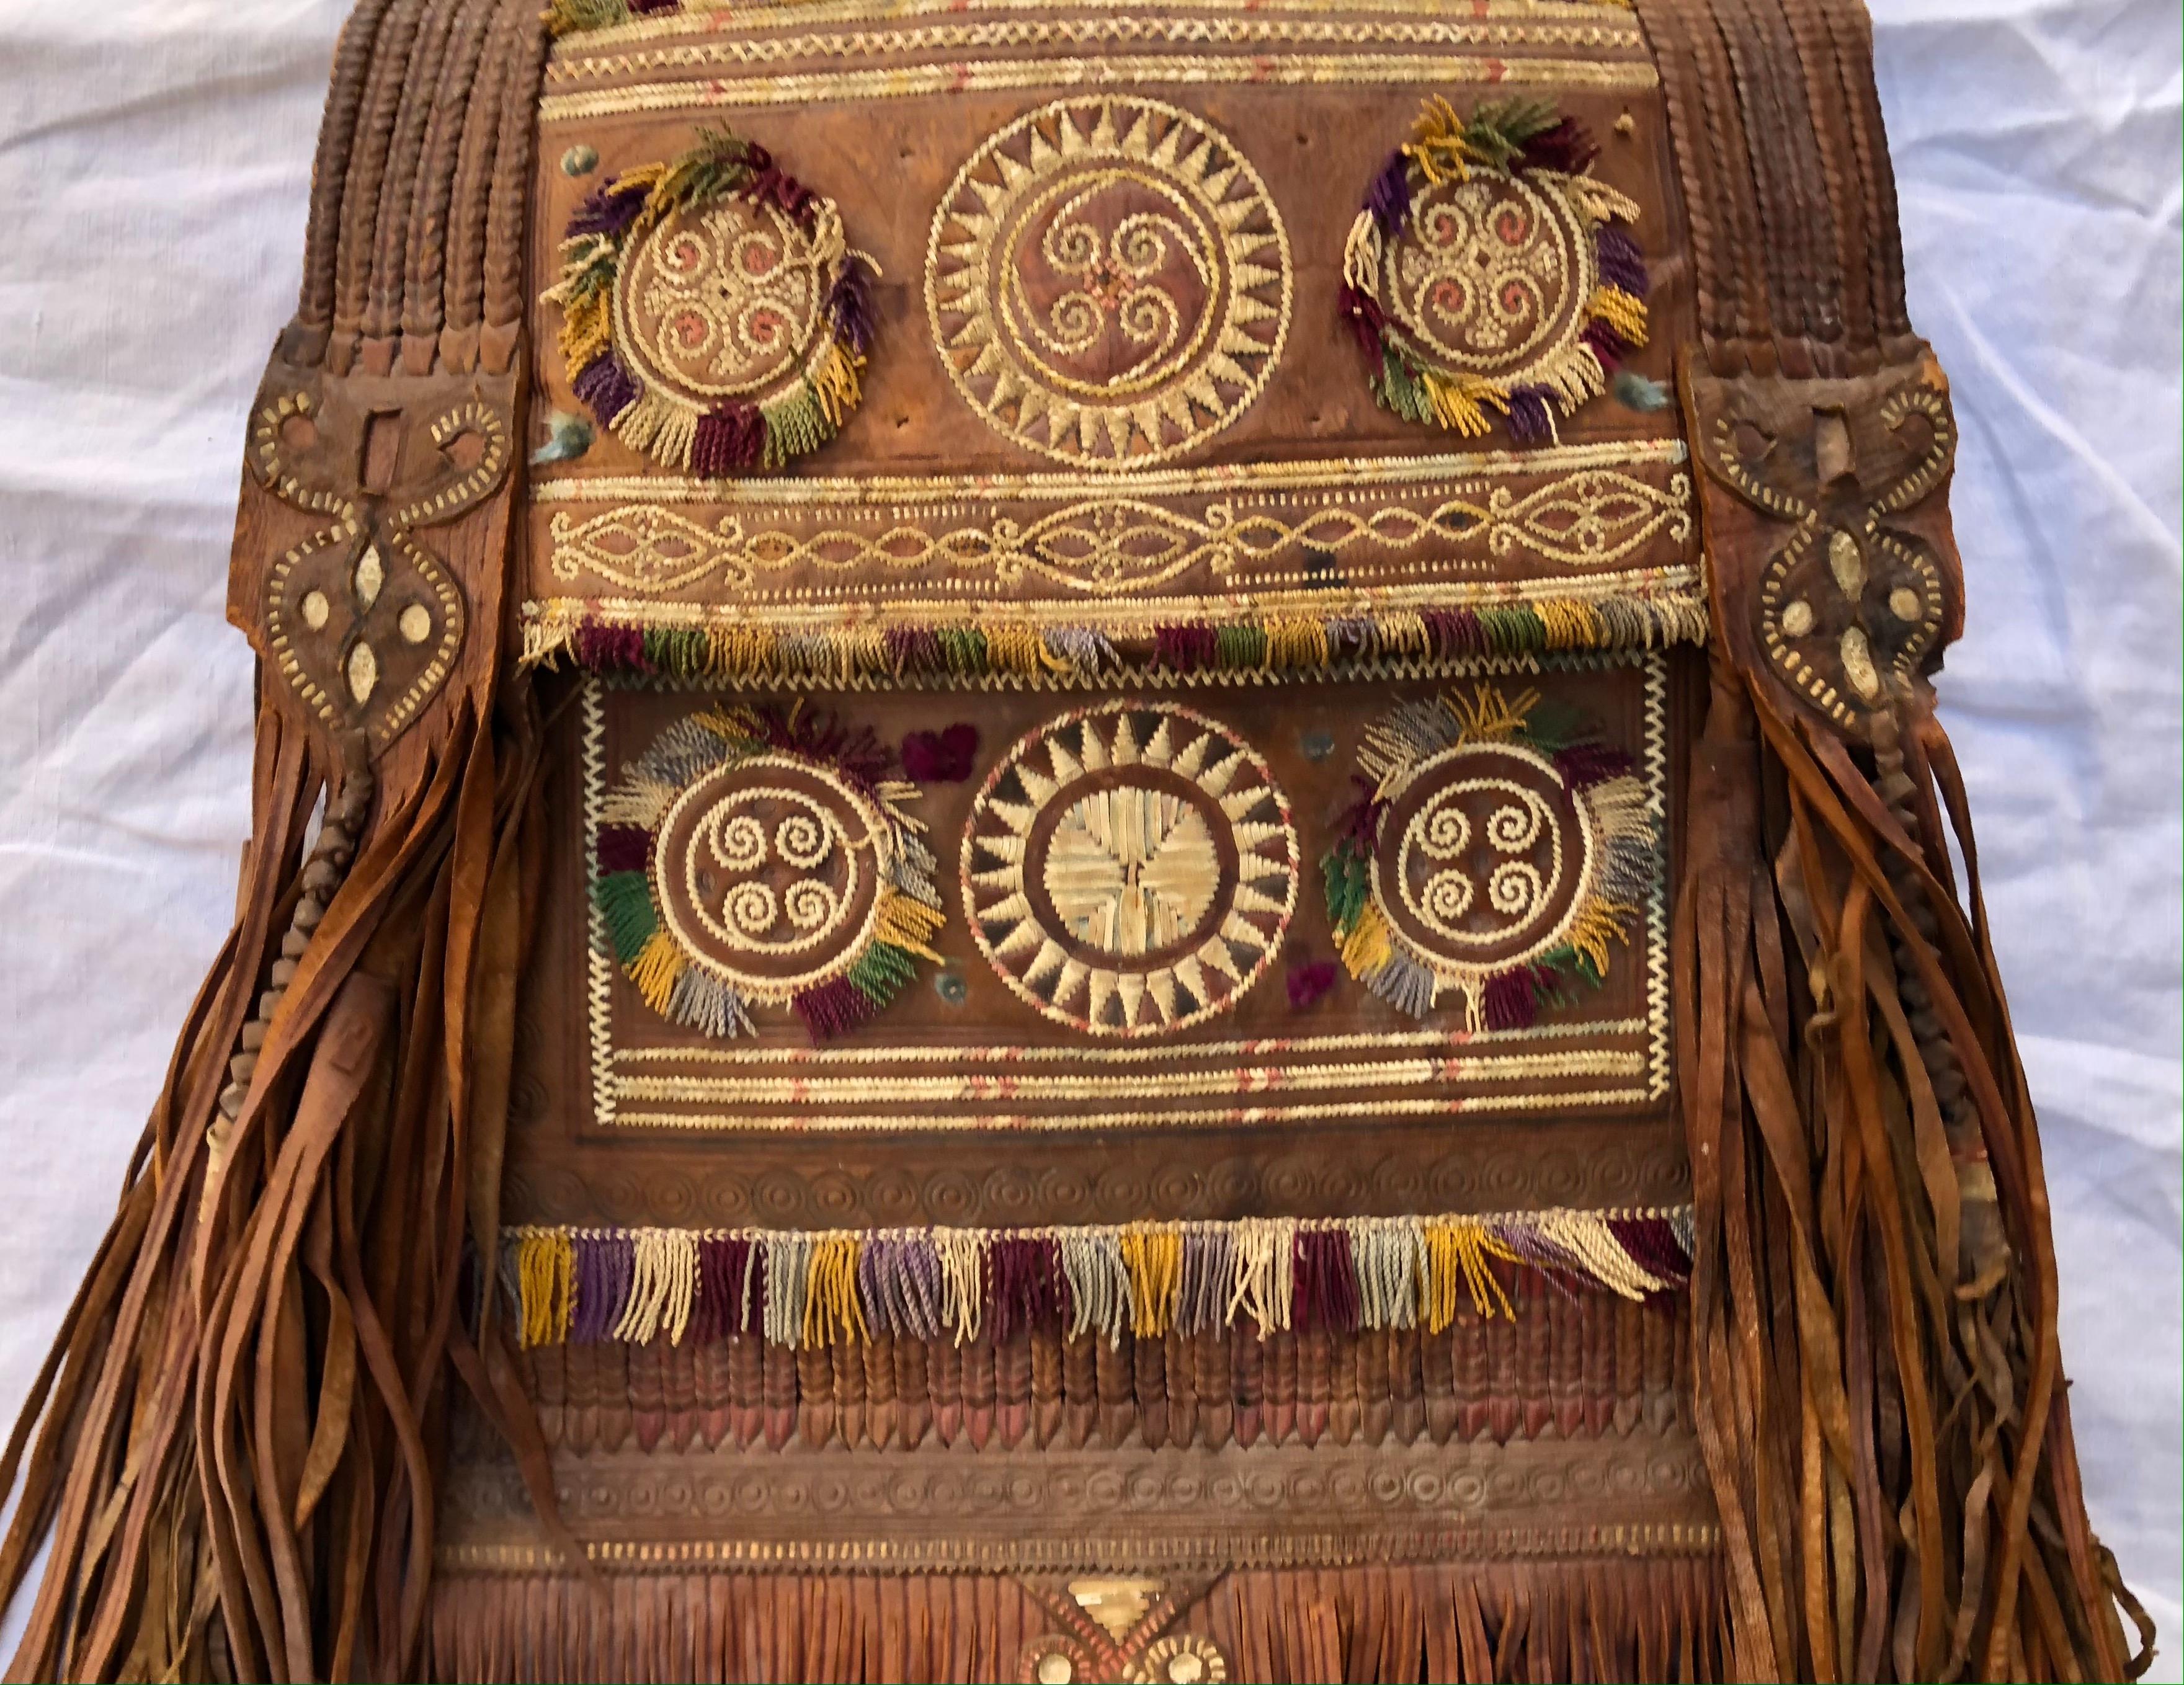 Un beau sac antique nord-africain touareg du Sahara. Sac en cuir artisanal, teint et brodé, avec une longue frange. Les Touaregs sont un peuple berbère au mode de vie pastoral traditionnellement nomade. Ils sont les principaux habitants du vaste